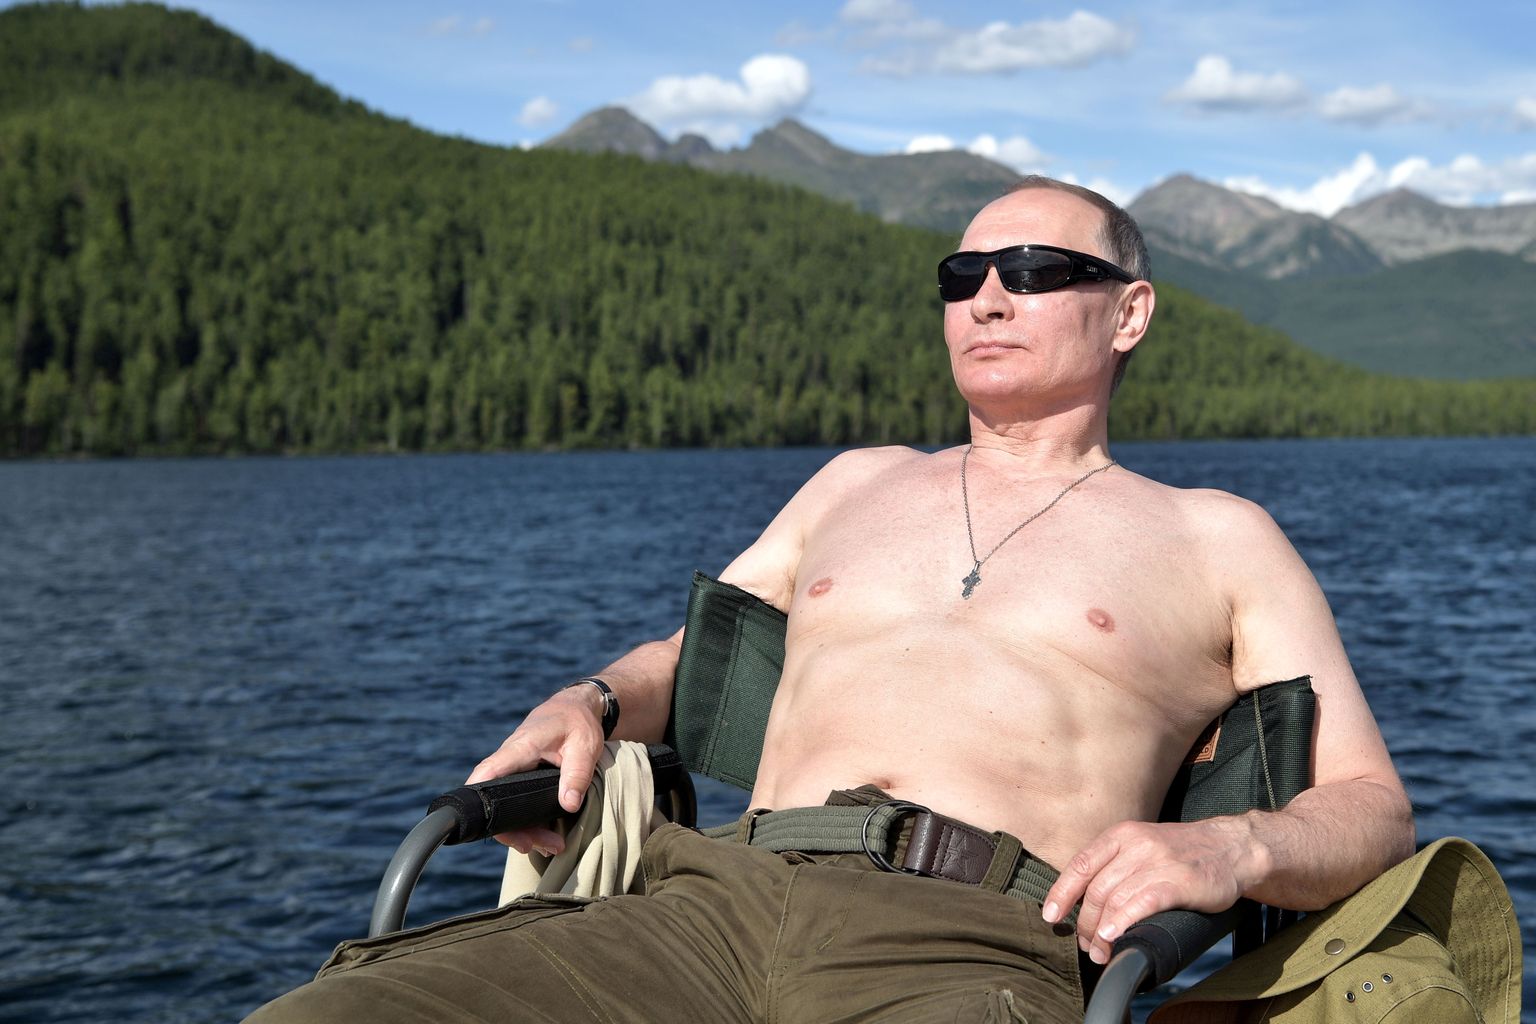 Venemaa president Vladimir Putin puhkamas augustis 2017 Siberis Tõva vabariigis